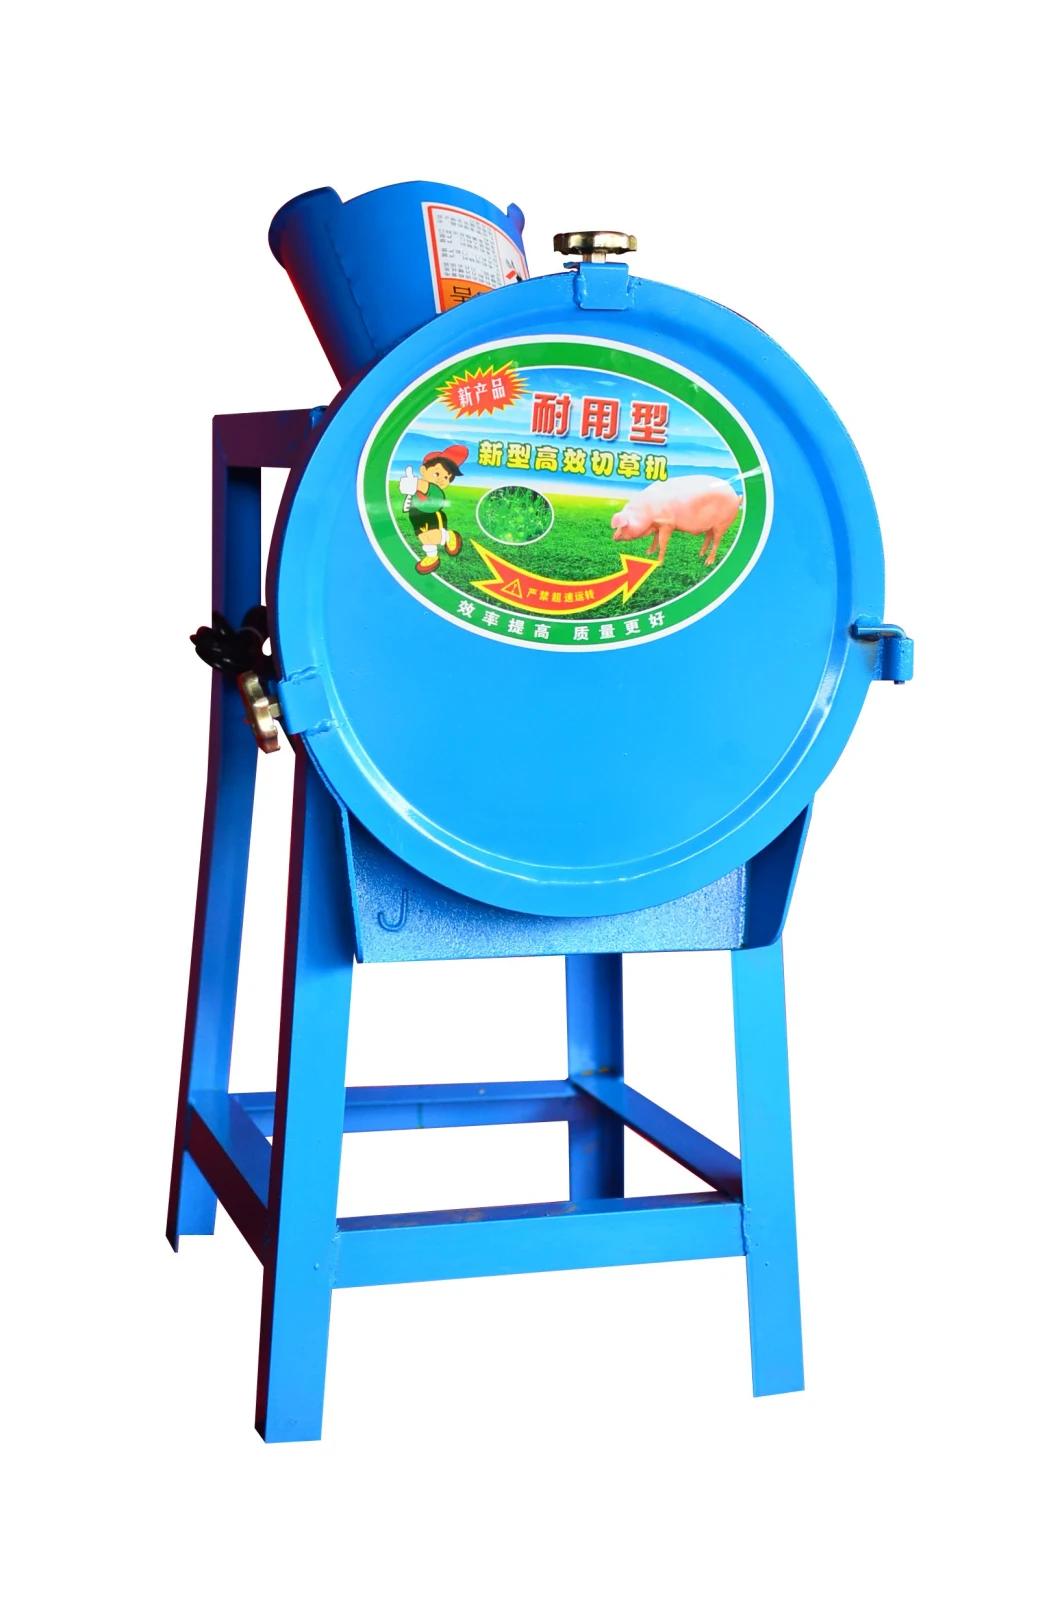 High Quality Food Processing Machine Fodder Cutter Machine for Farm Animal Feeding